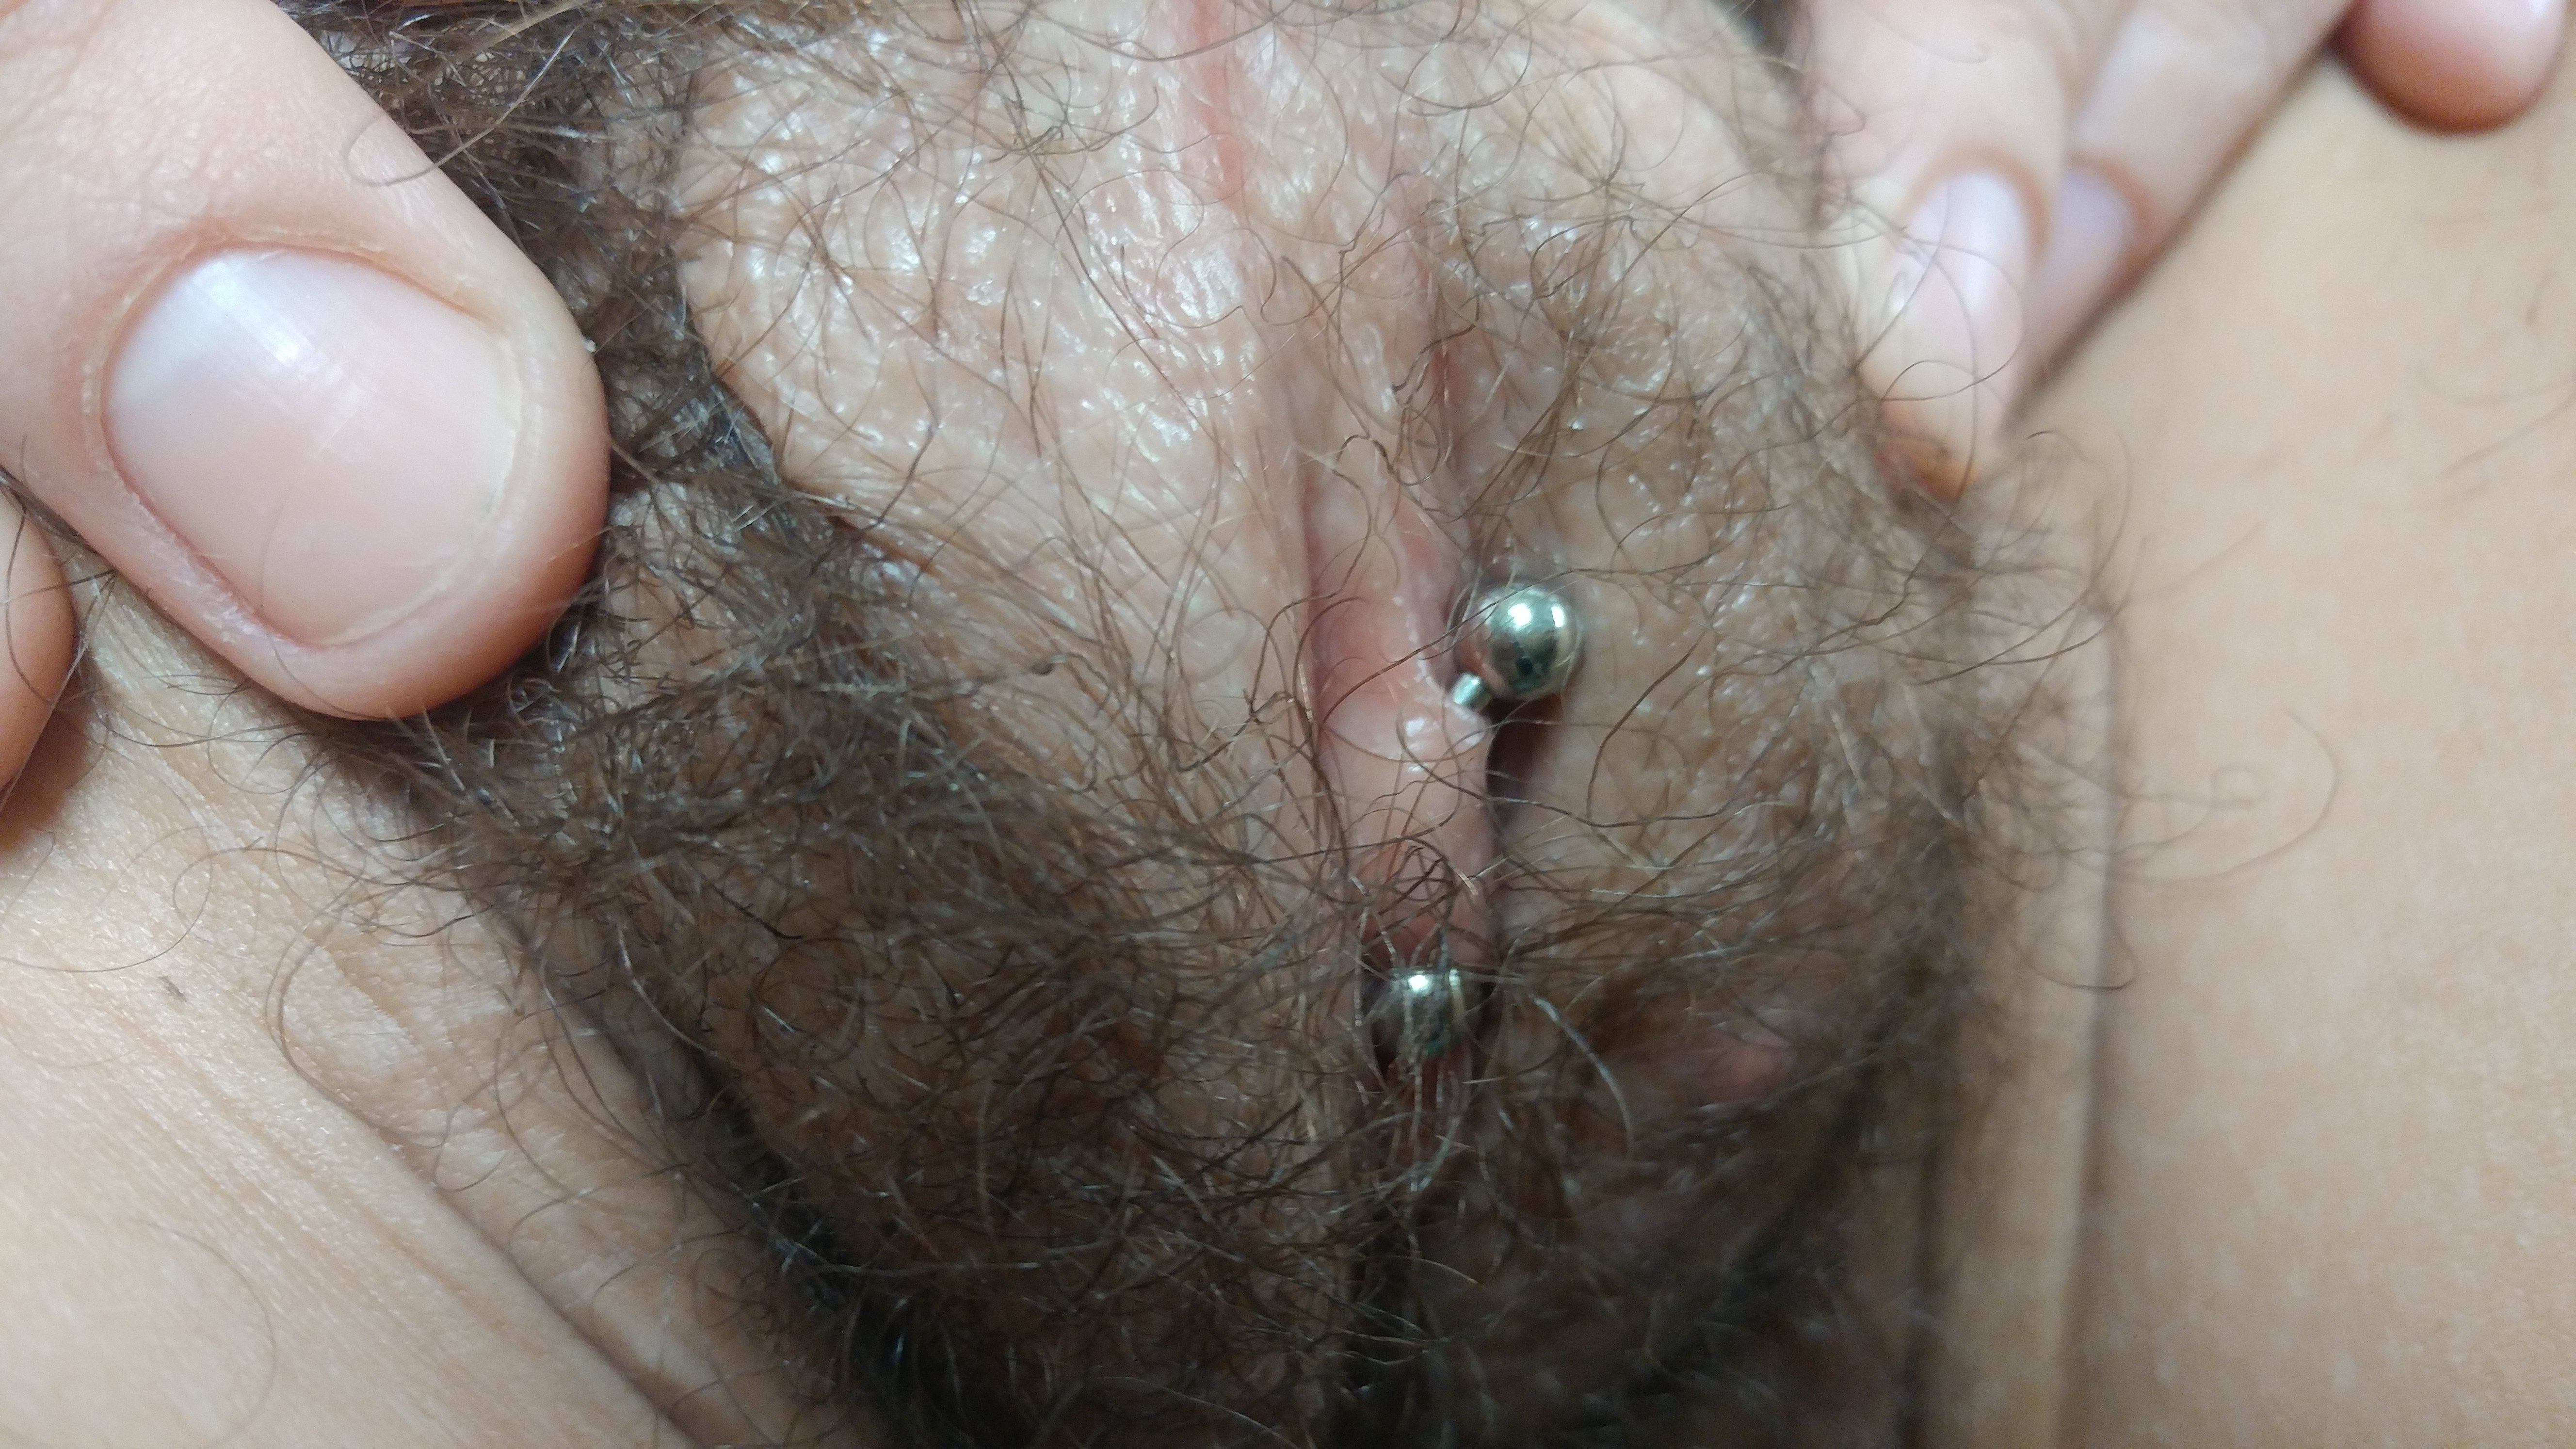 Barbera reccomend Advantages of clit piercing